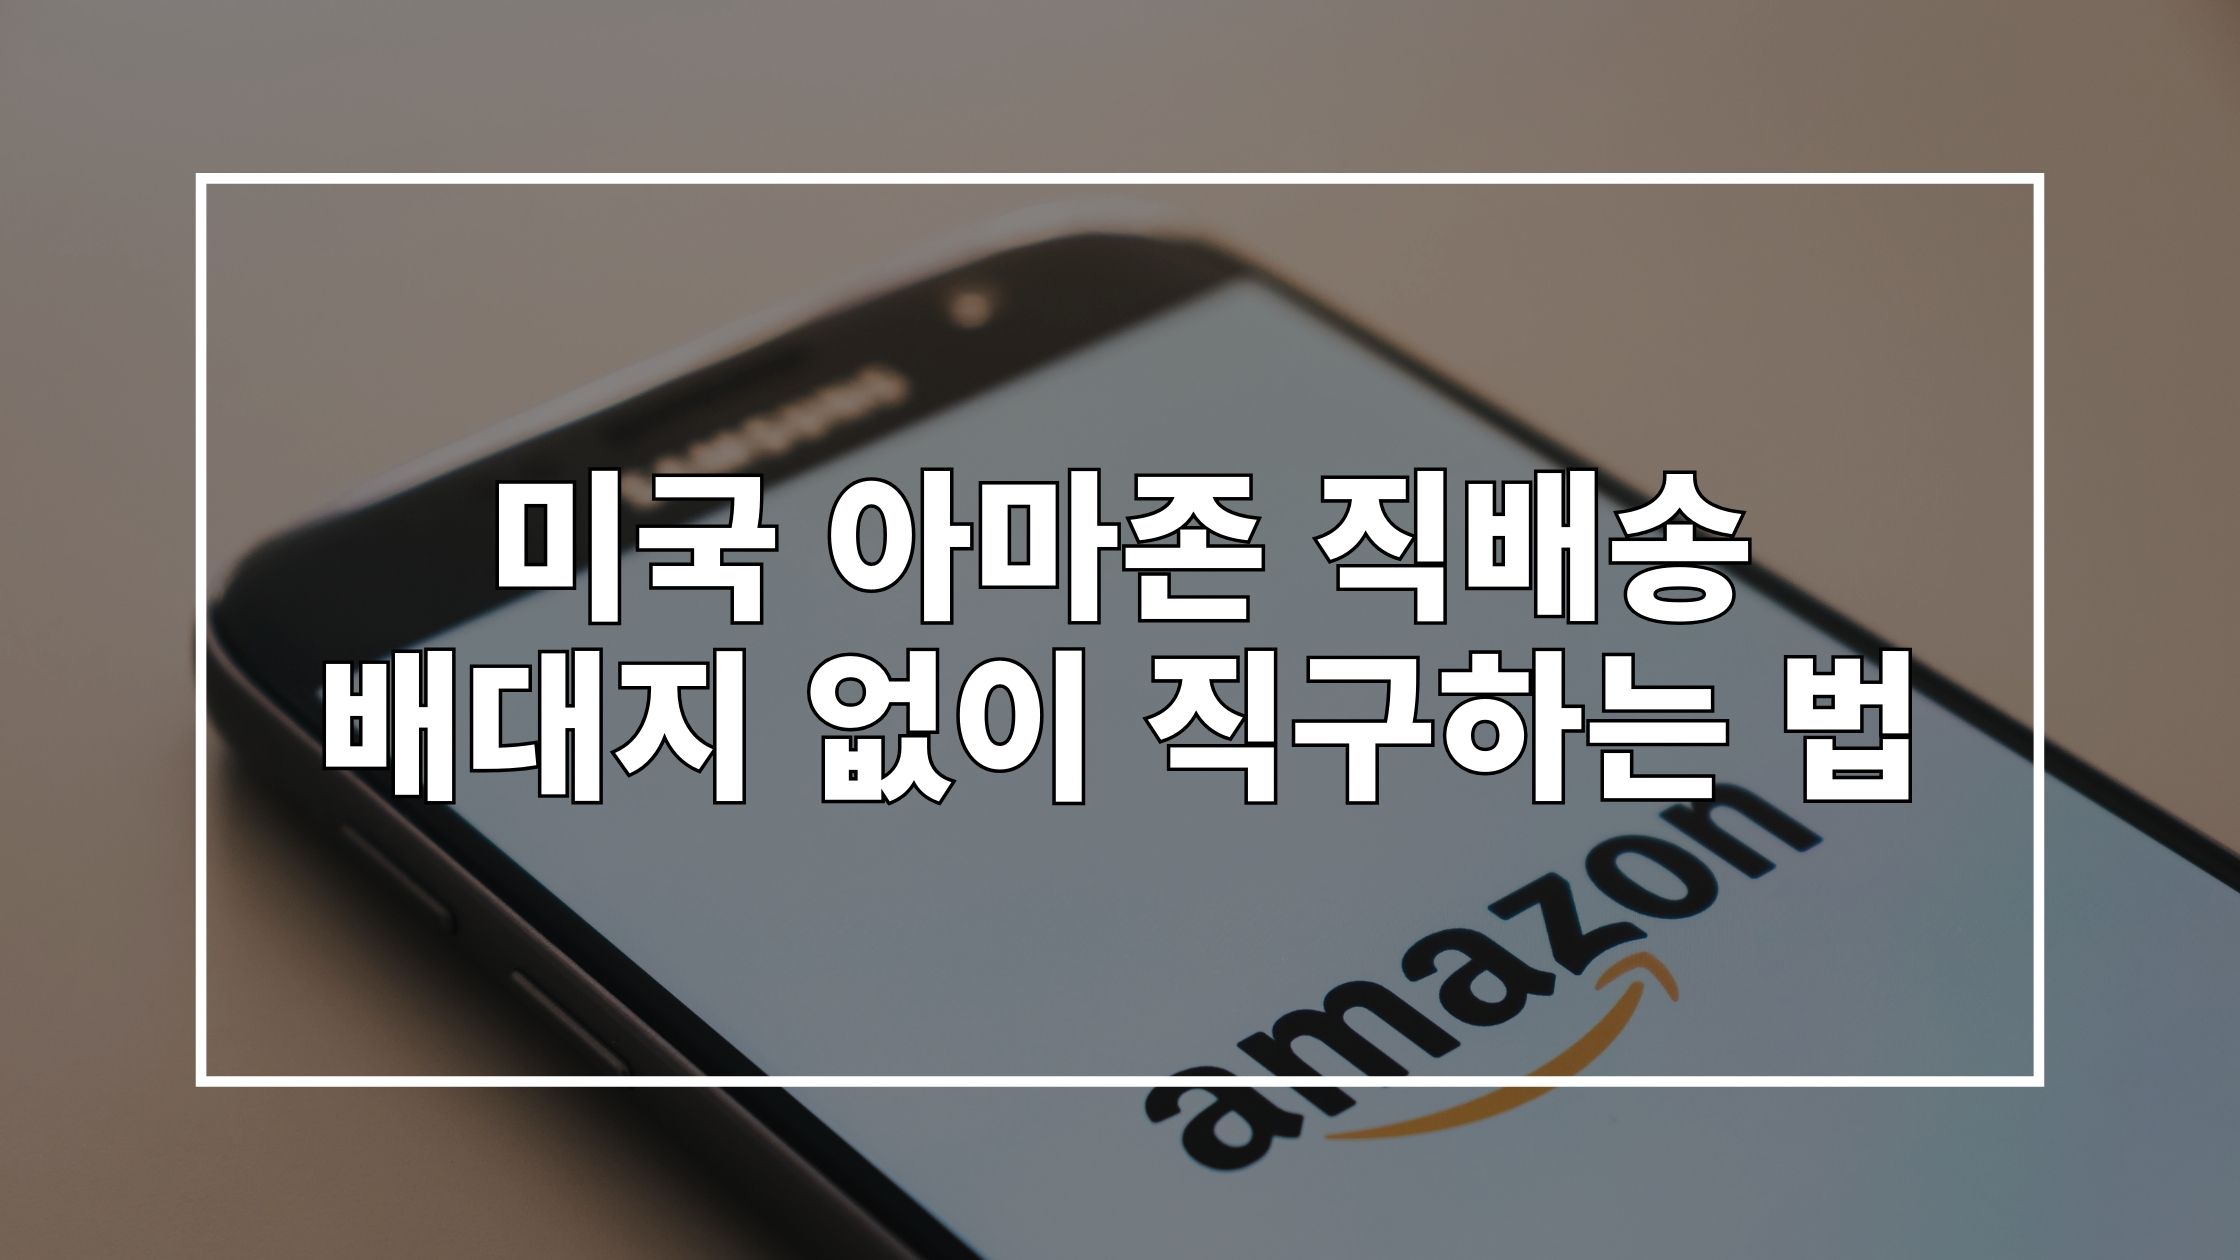 아마존 앱이 띄워진 스마트폰 사진 위에 '미국 아마존 직배송 배대지 없이 직구하는 법'이라고 쓰여 있는 썸네일 이미지입니다.